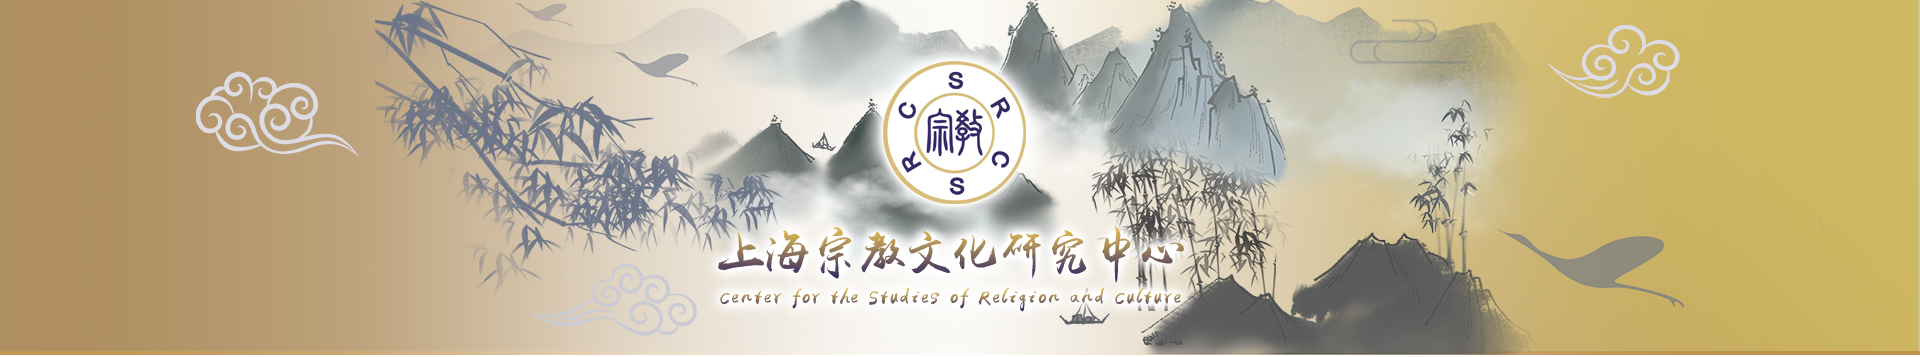 上海宗教文化研究中心专题页面头部图片